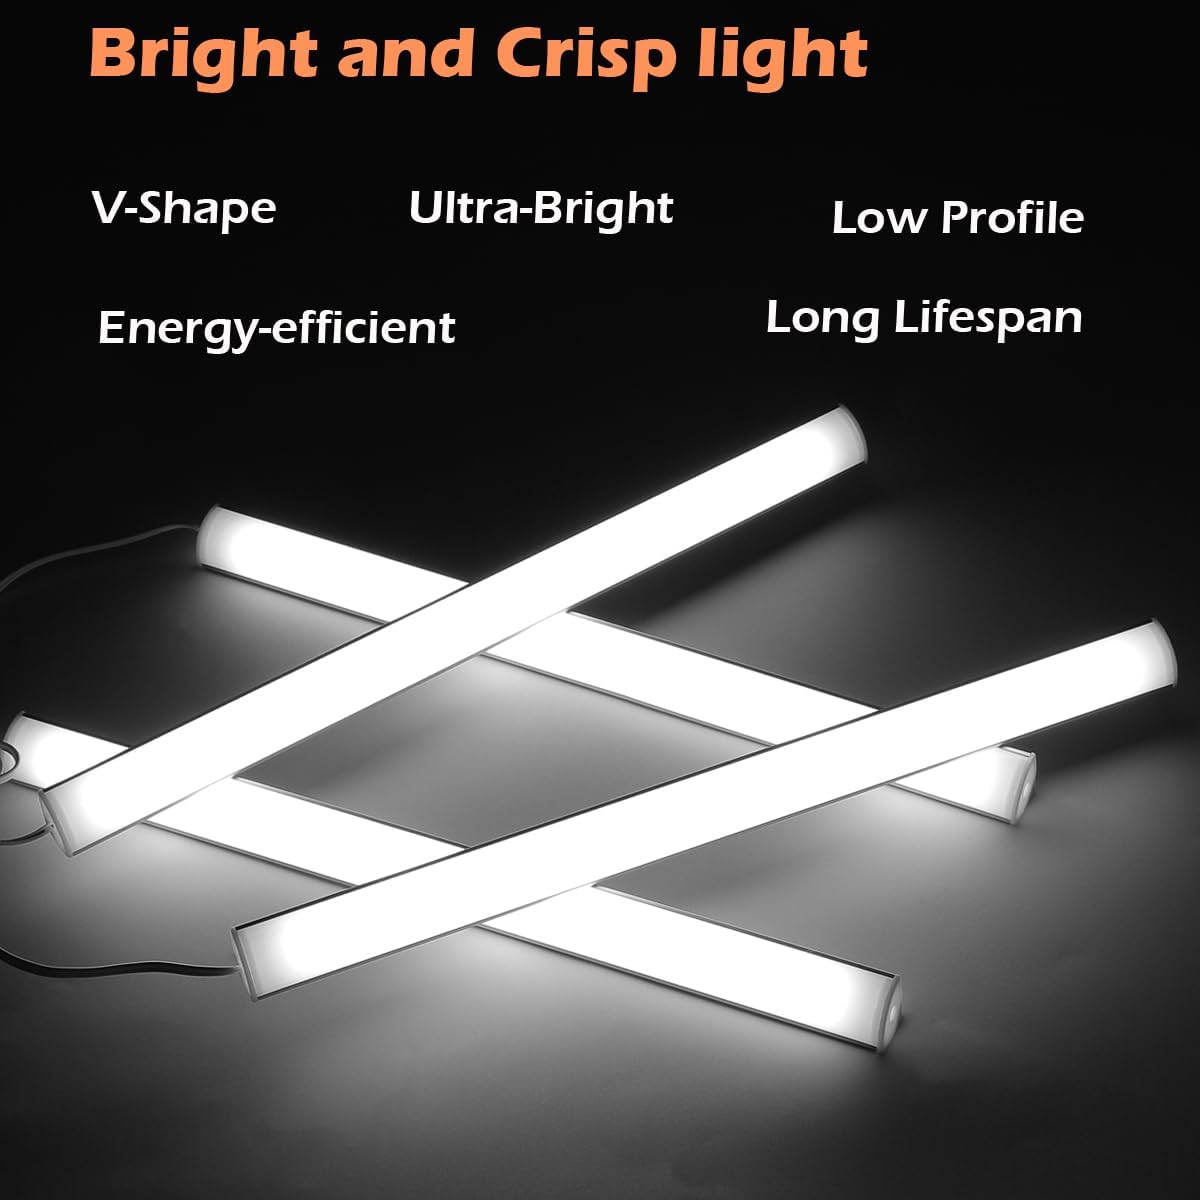 LED-Unterschrankbeleuchtung, 4-Panels 12" V-förmige LED-Lichtleisten - 1200lm 12W - Elektrisch mit Kabel und eingebautem Ein-/Ausschalter